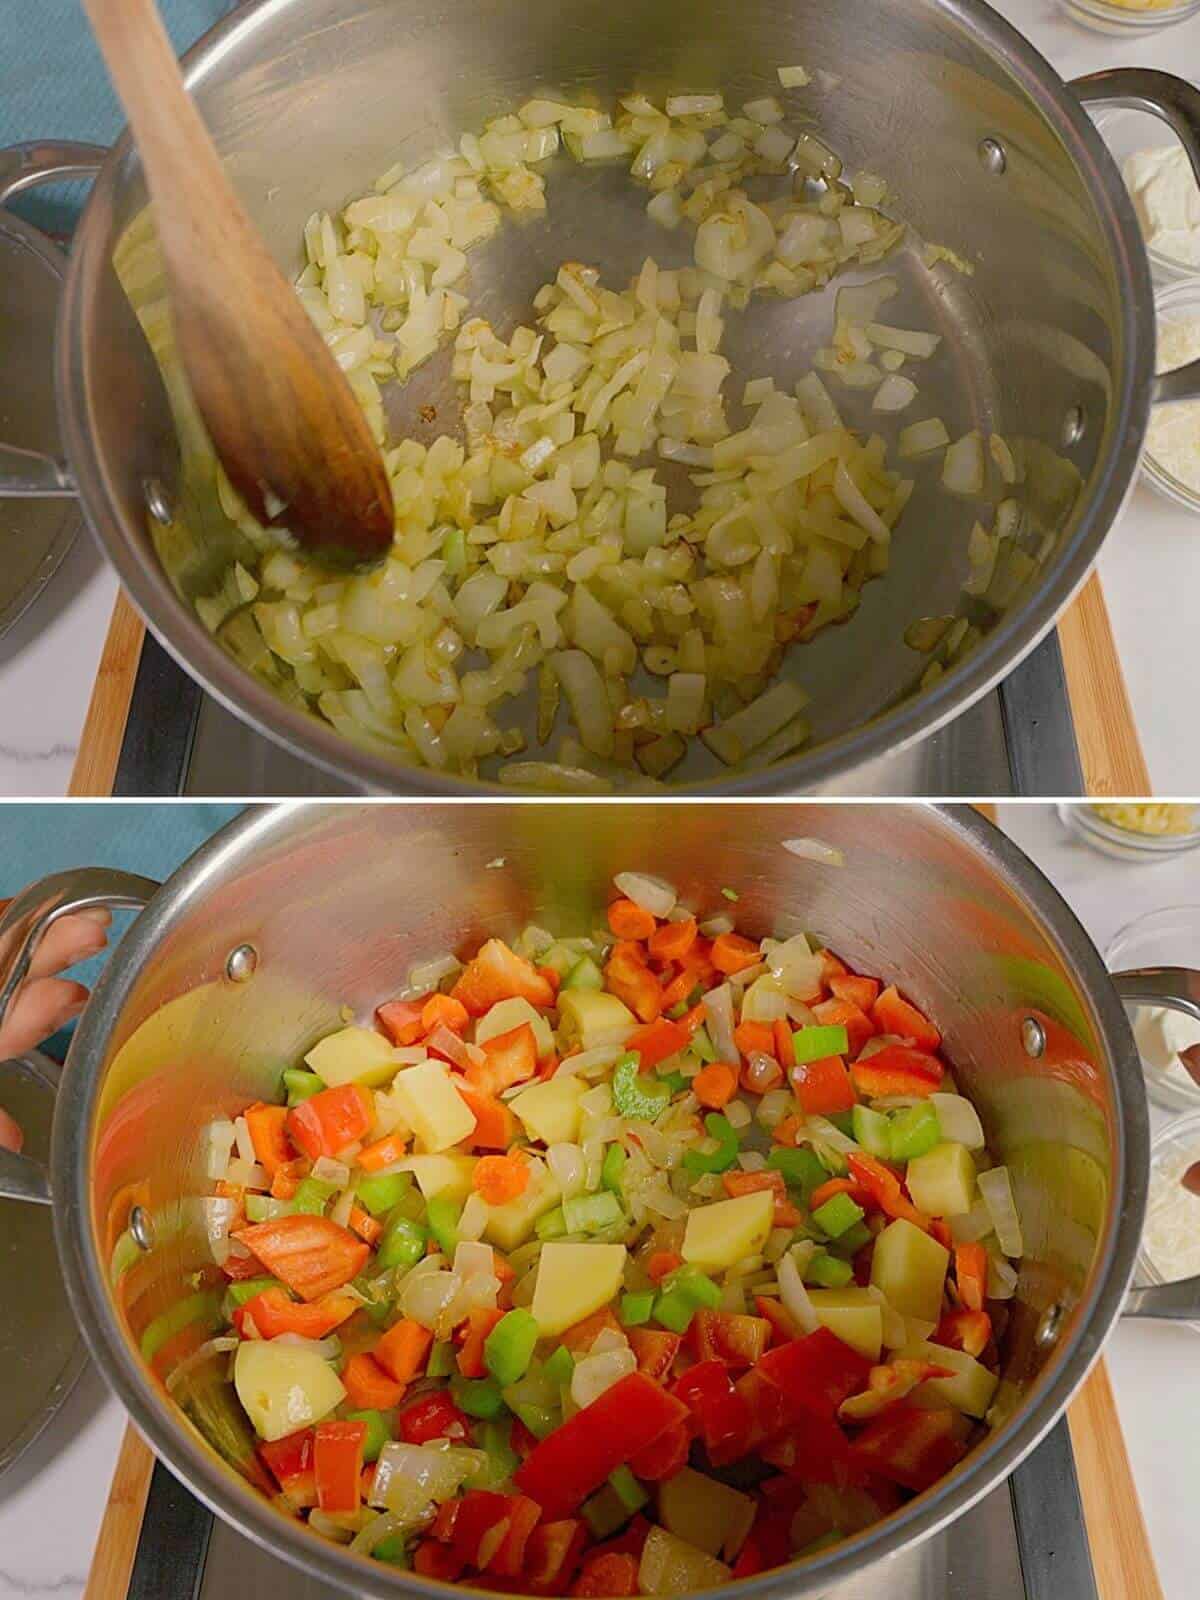 Cooking vegetables until soft.